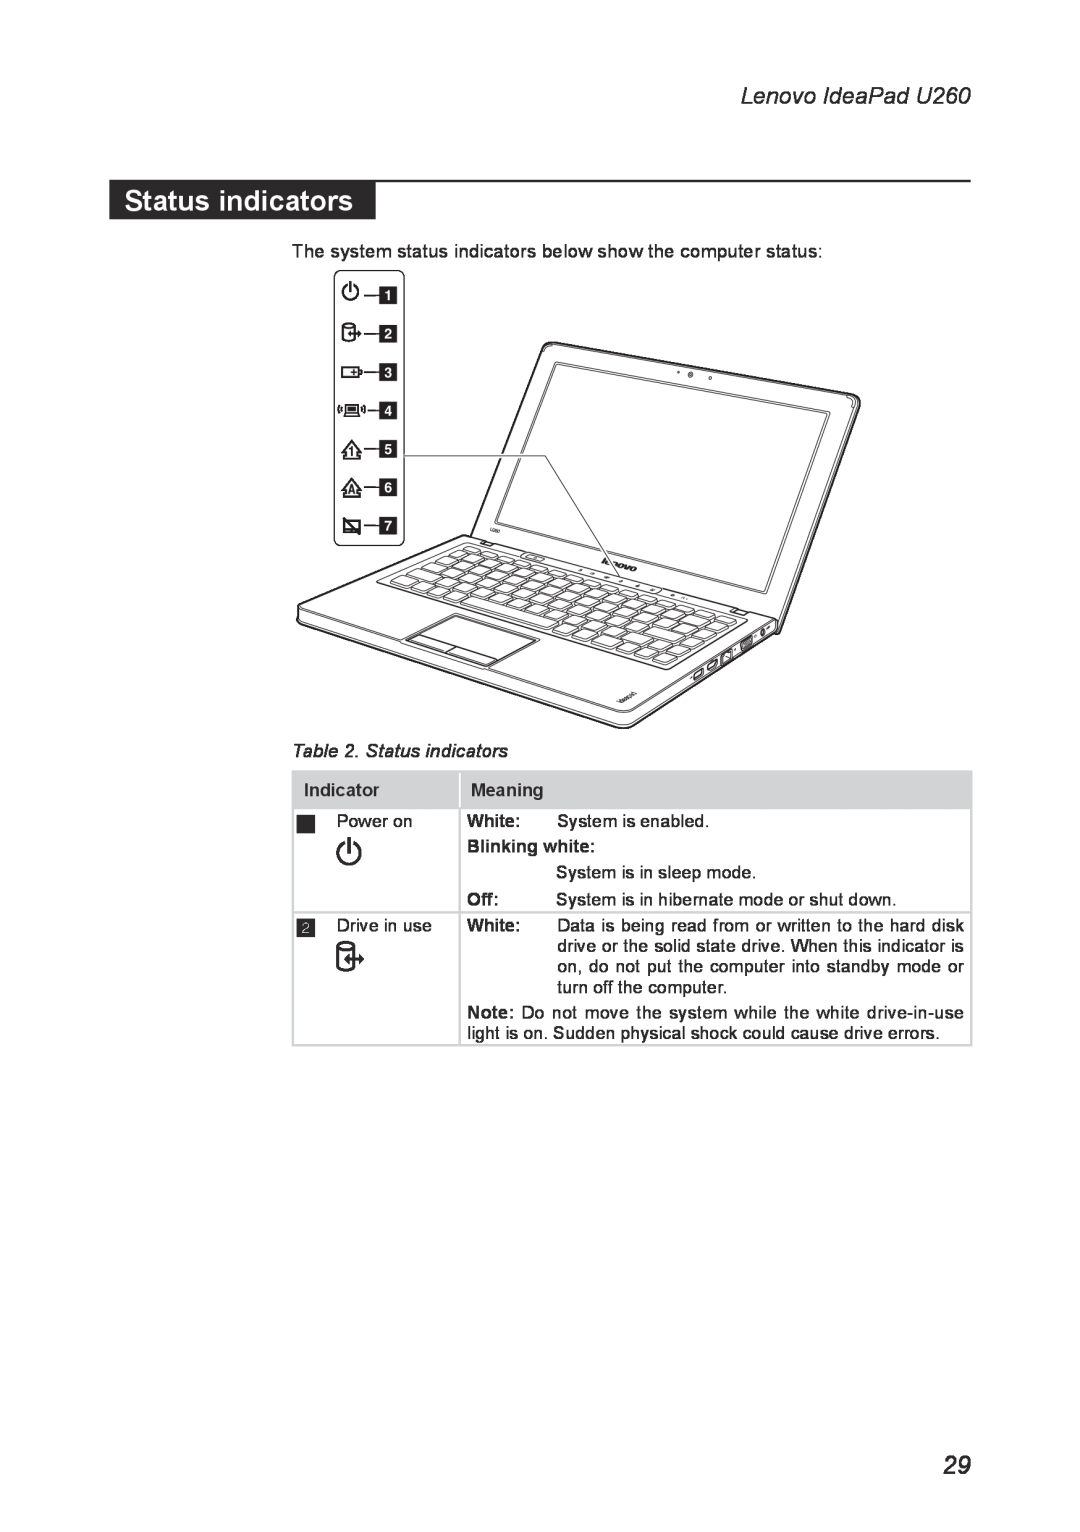 Lenovo manual Status indicators, Lenovo IdeaPad U260, Indicator, Meaning, White, Blinking white 